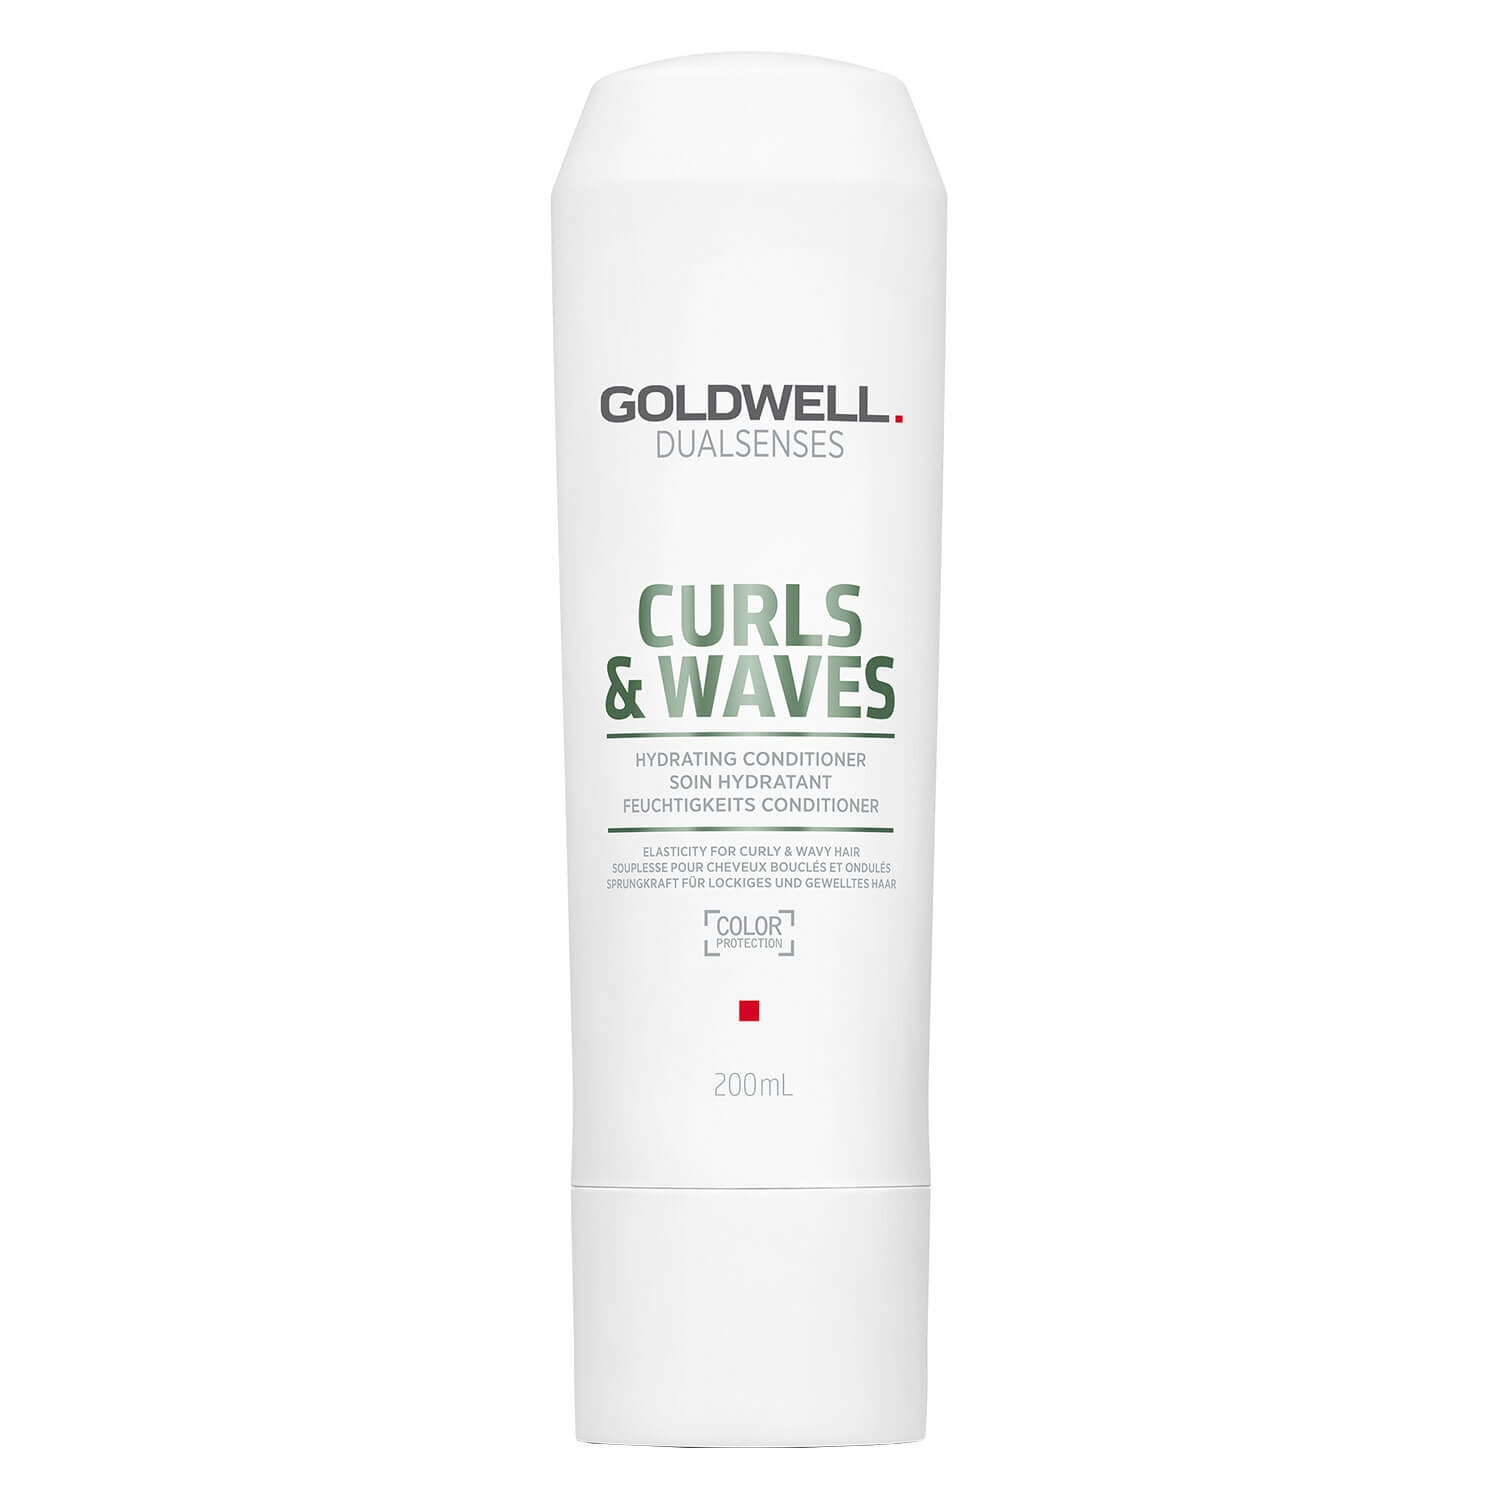 Produktbild von Dualsenses Curls & Waves - Hydrating Conditioner